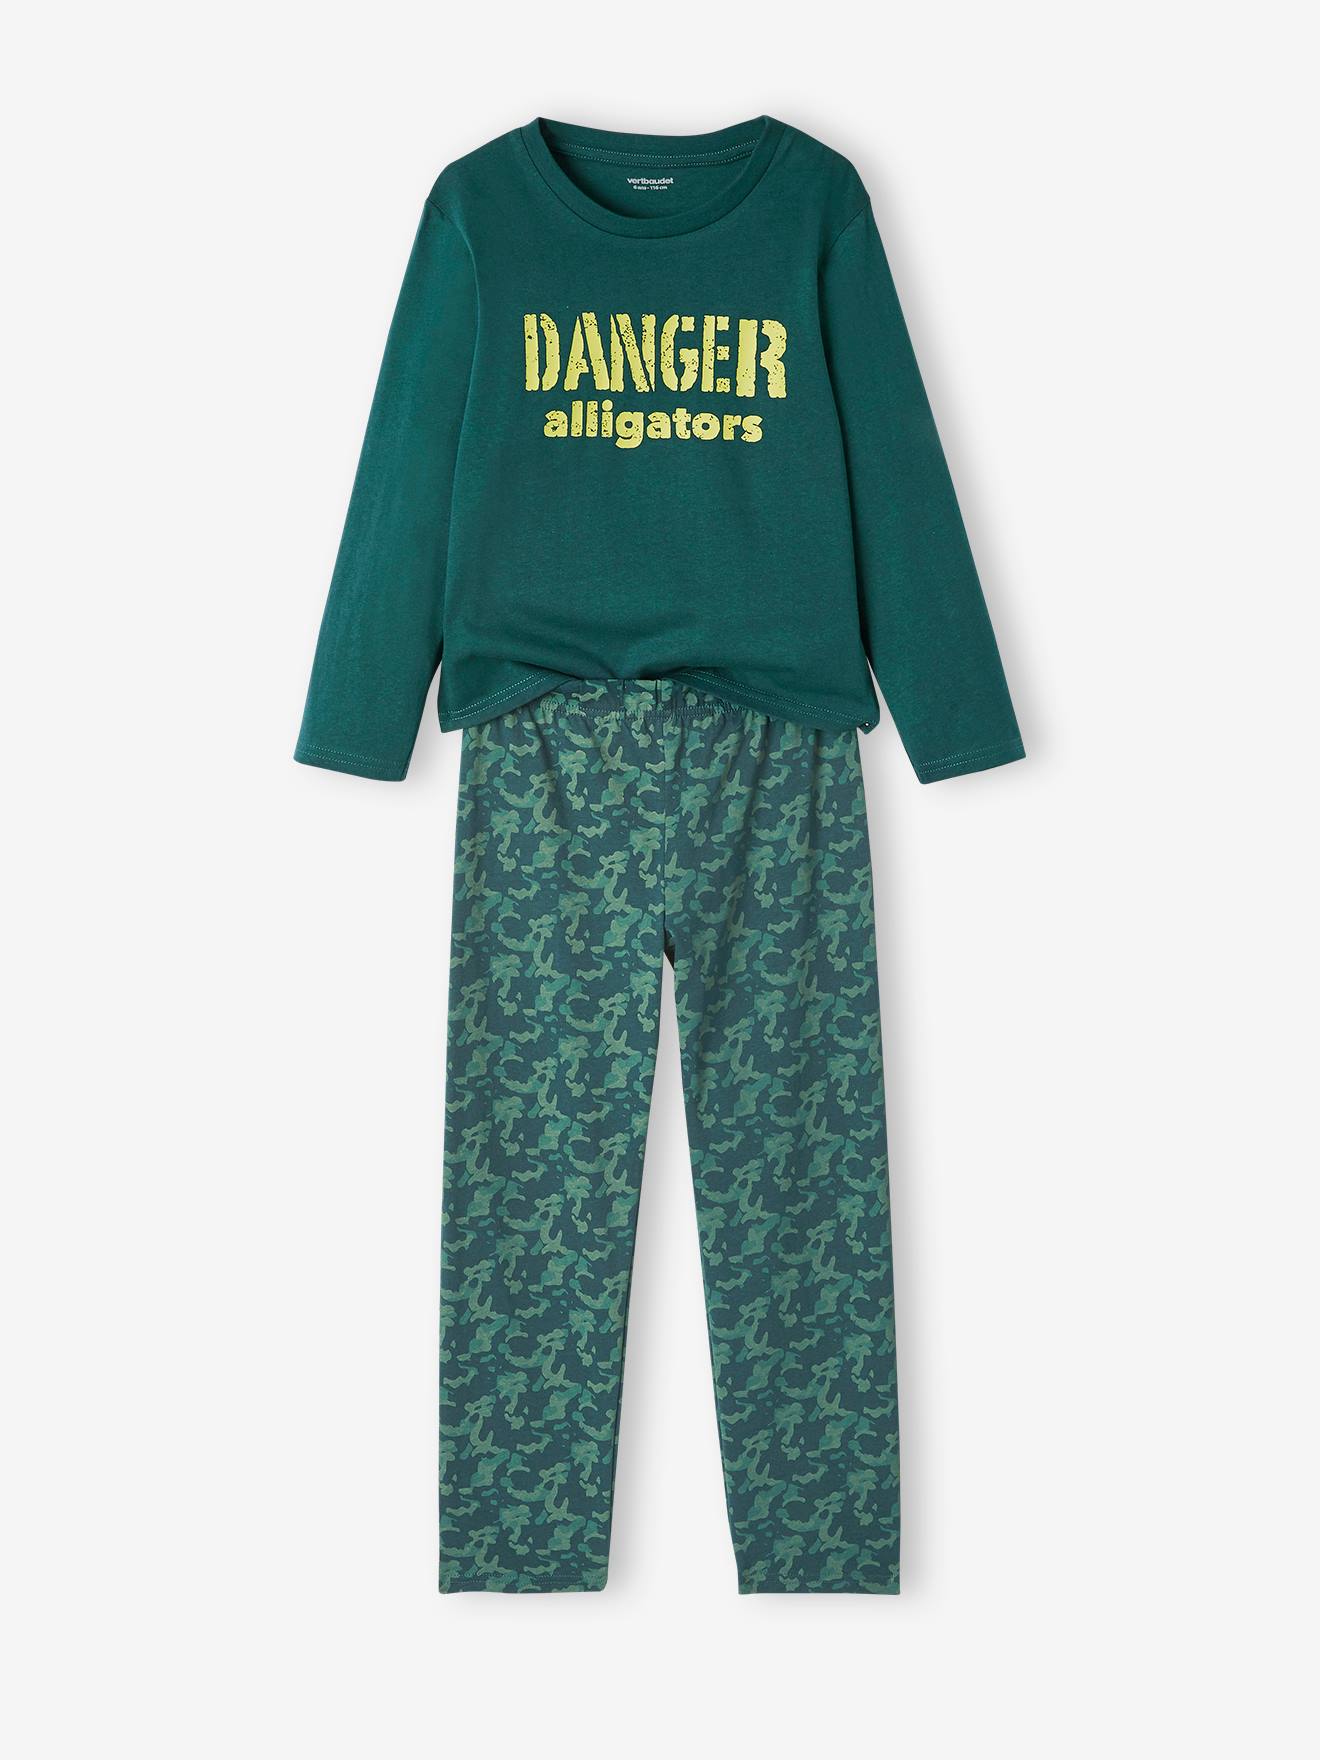 Lote de 2 pijamas "Aligátor", verde oscuro liso con motivos - Vertbaudet